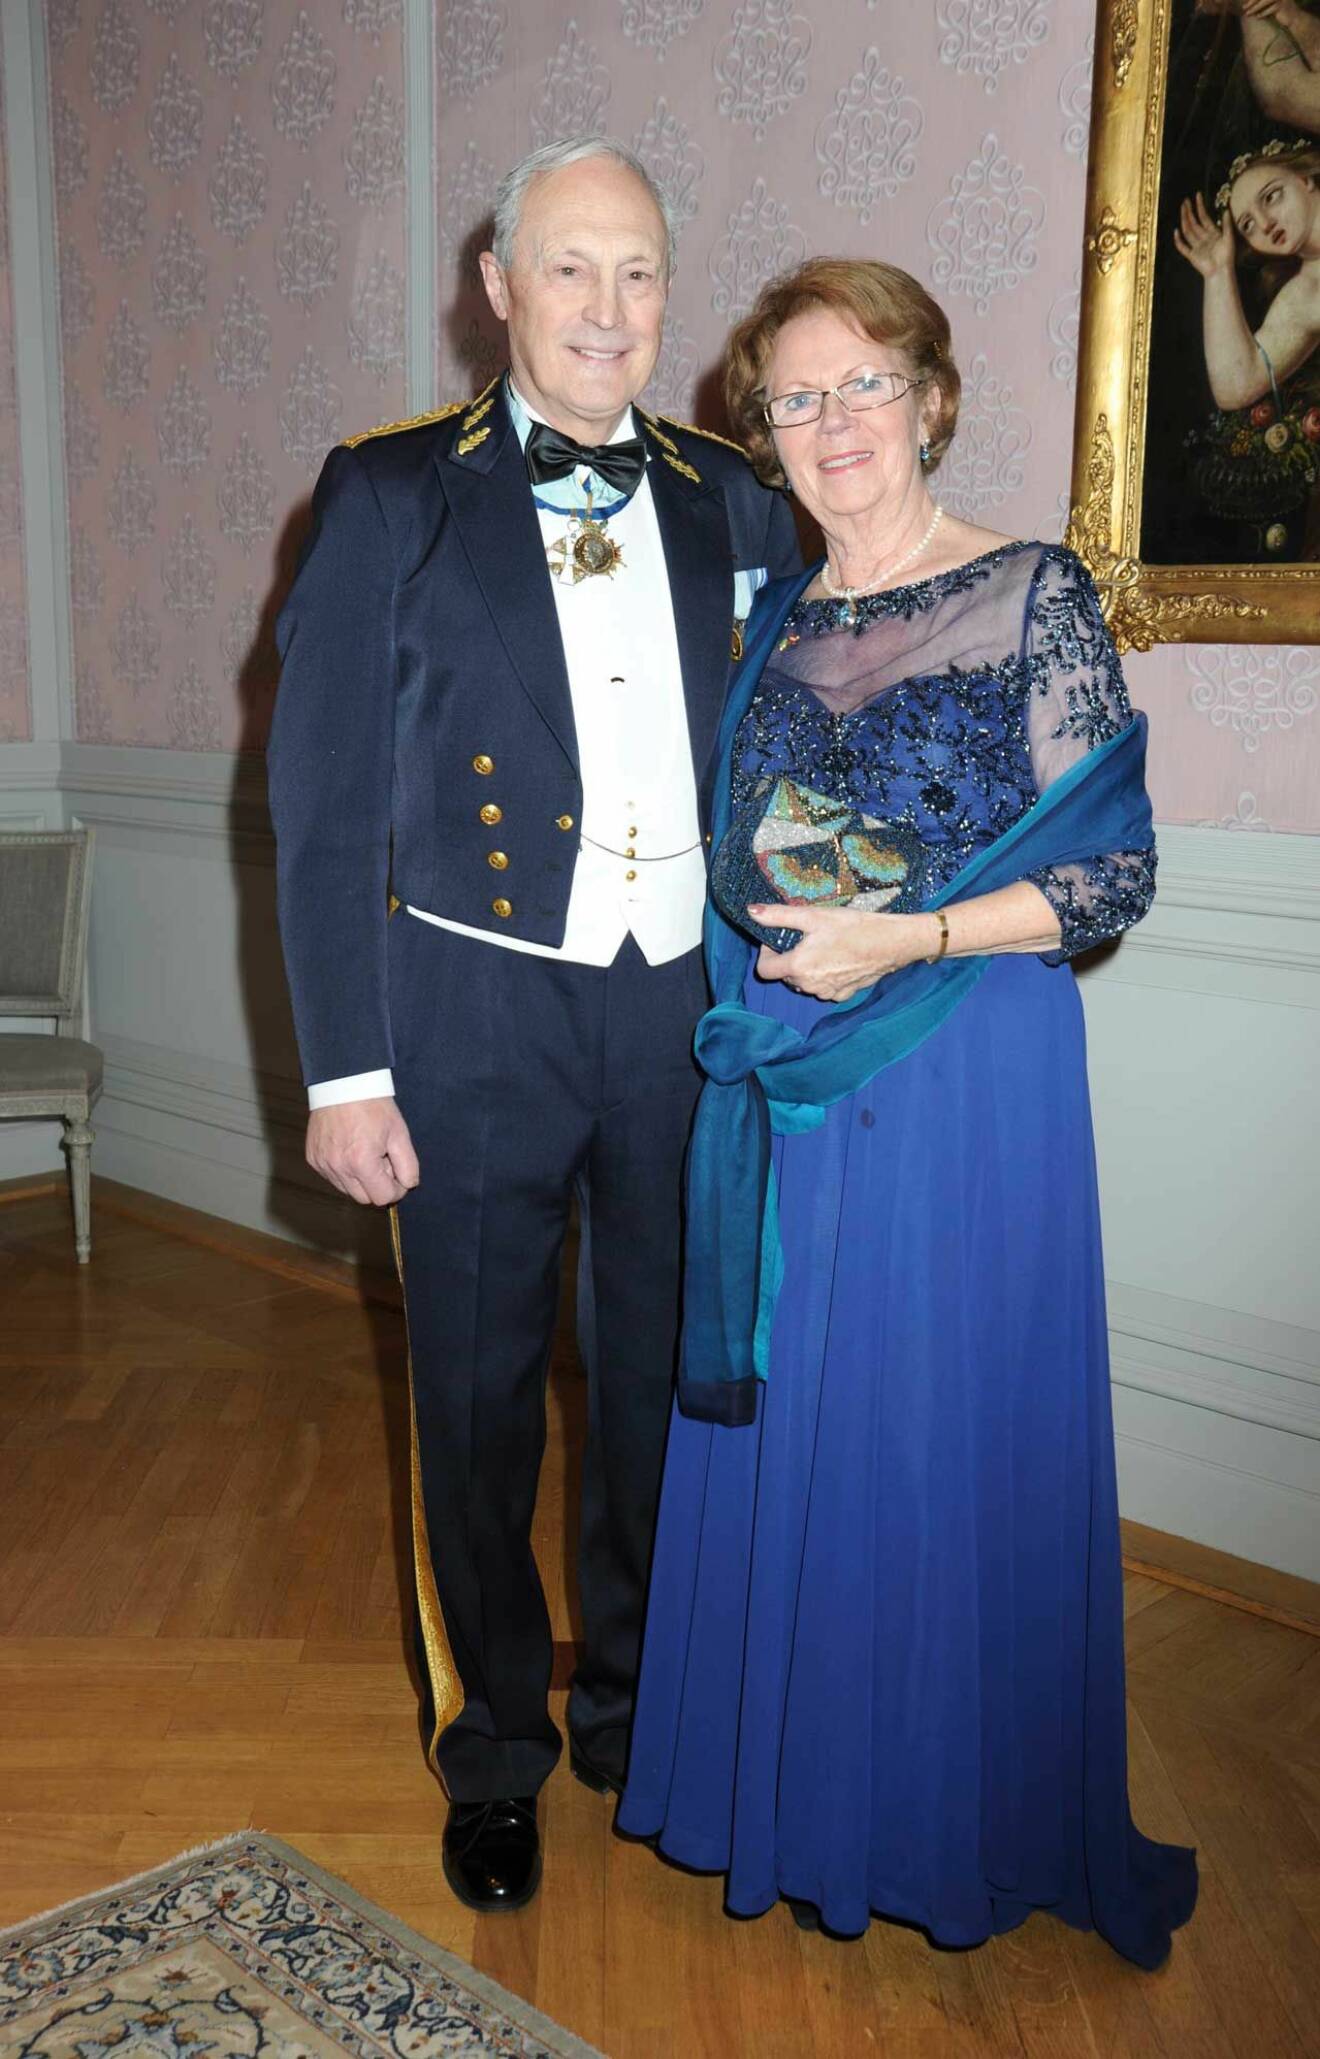 Generallöjtnanten, och tidigare hovstallmästaren, Mertil Melin med hustrun Margareta.